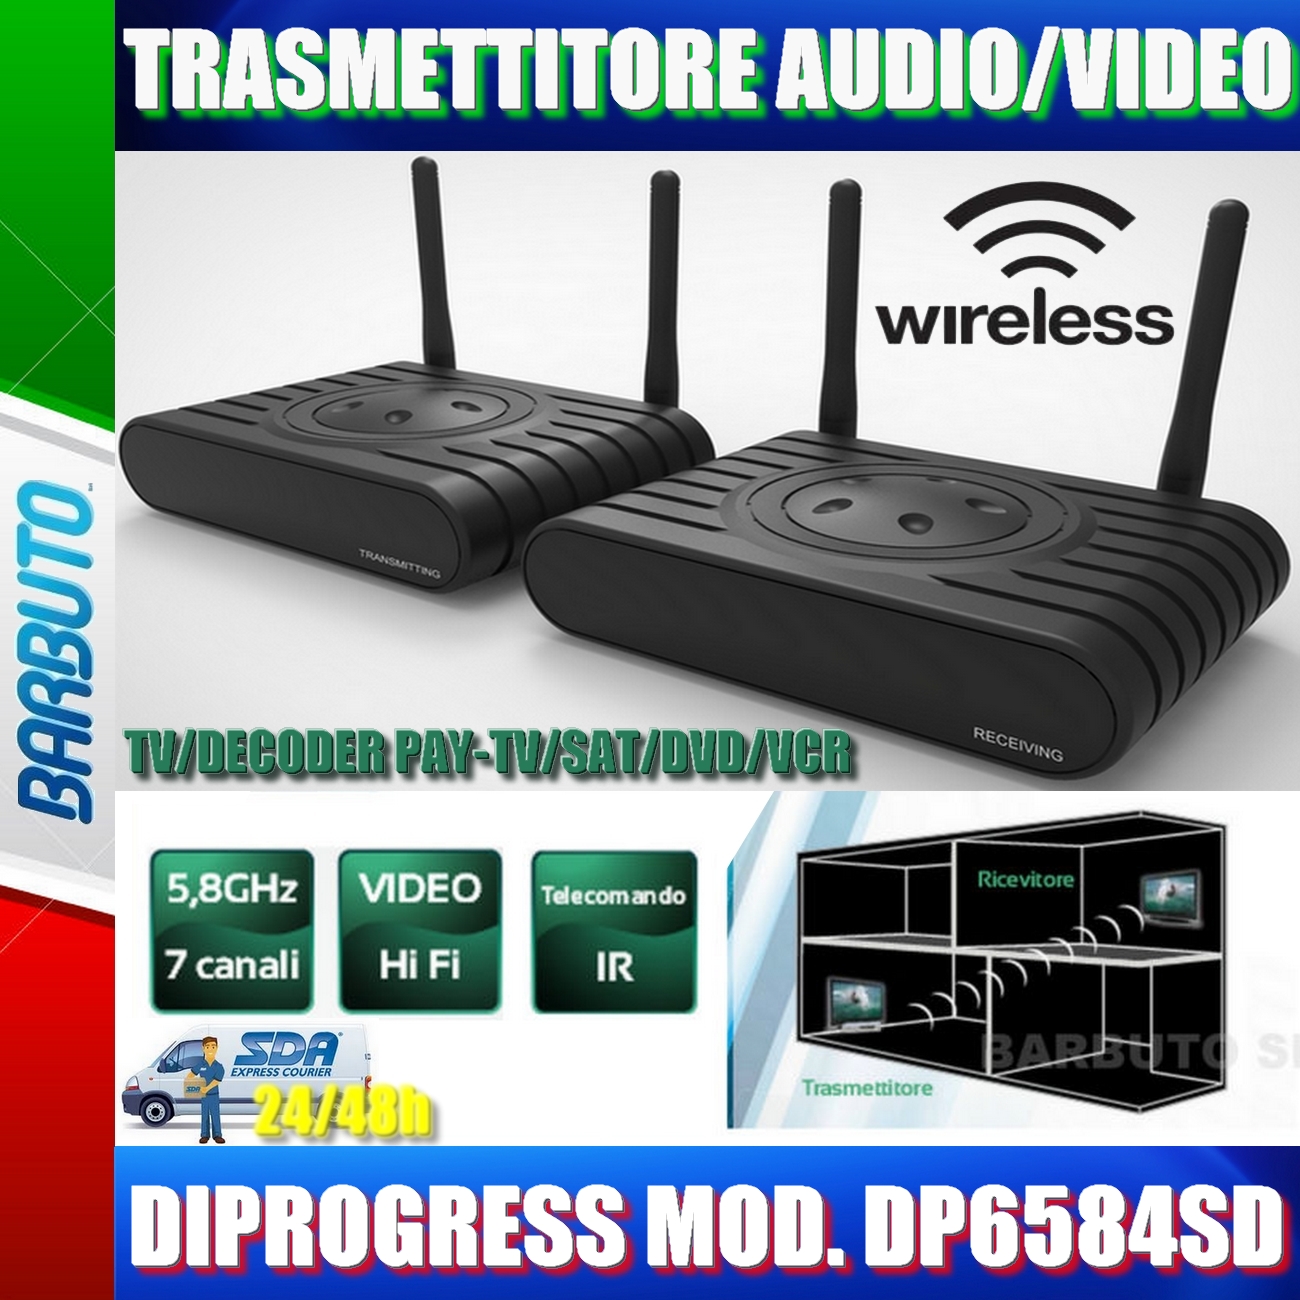 Wireless audio/video sender 5,8ghz con ripetitore di telecomandi codificato  (58.7010.00 - 58701000) - GBC Elettronica